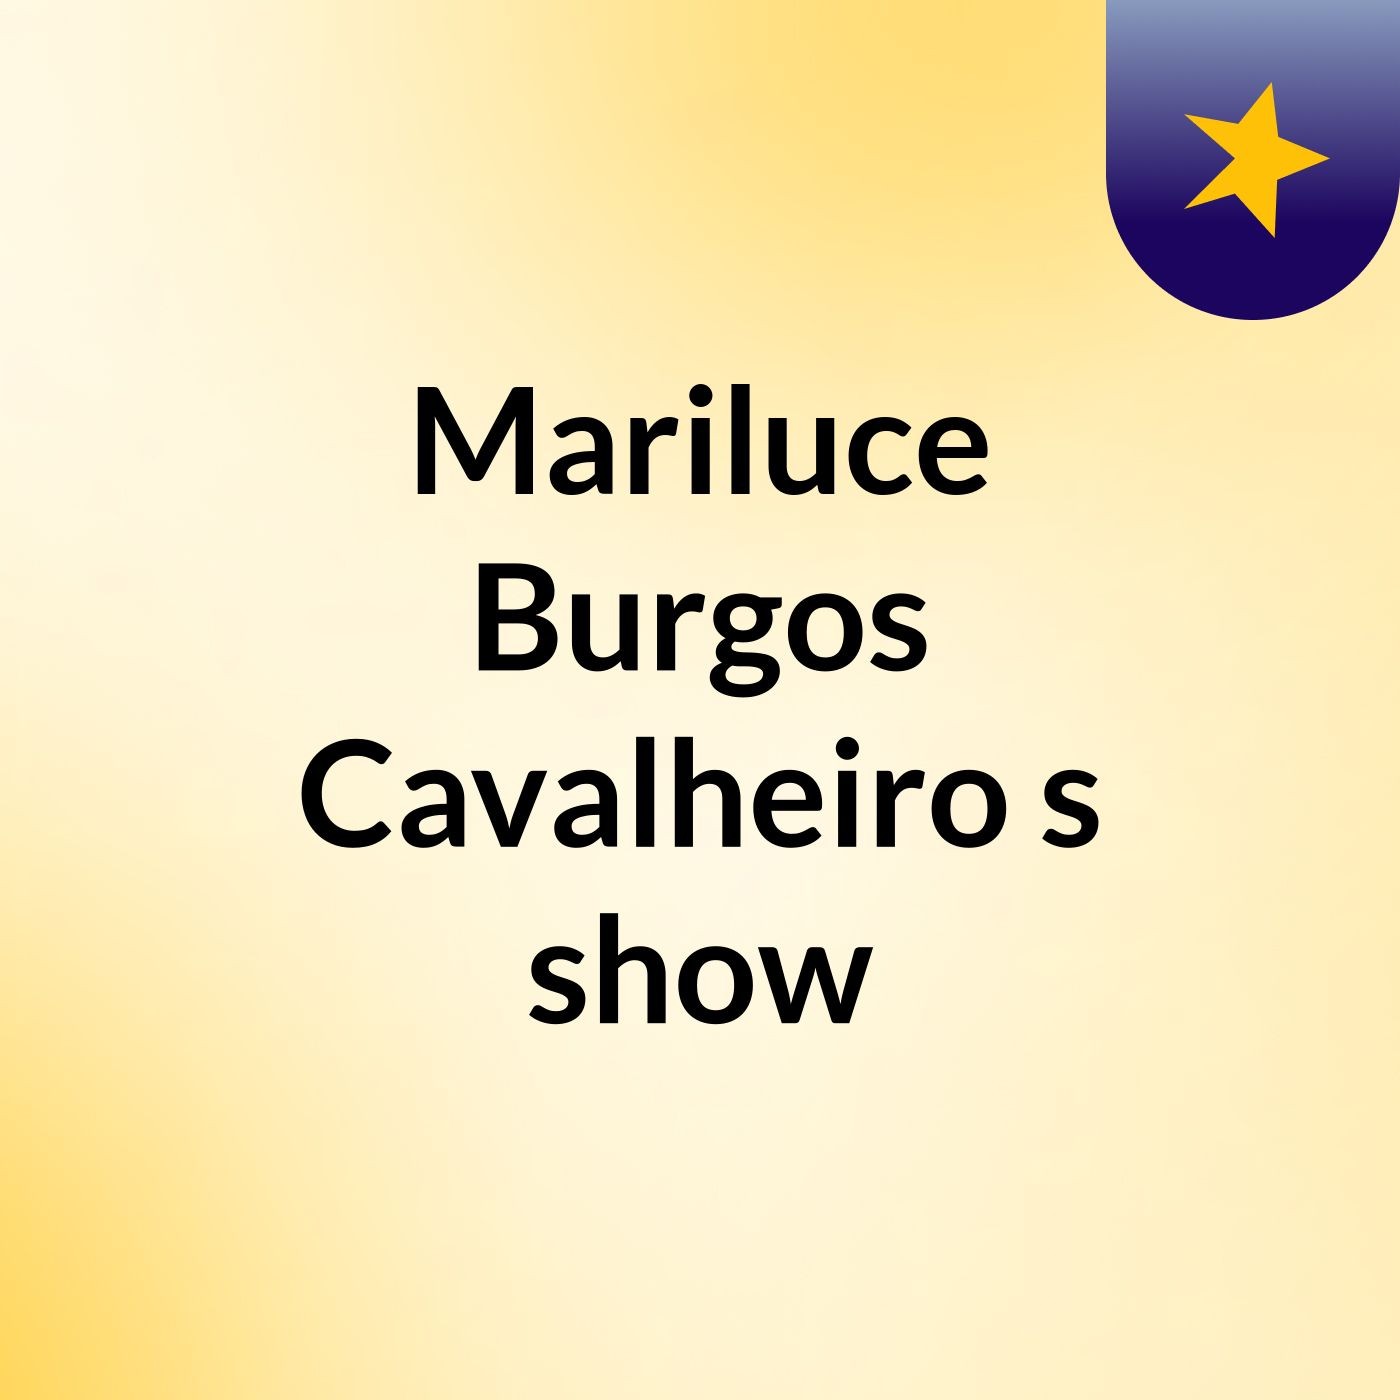 Mariluce Burgos Cavalheiro's show